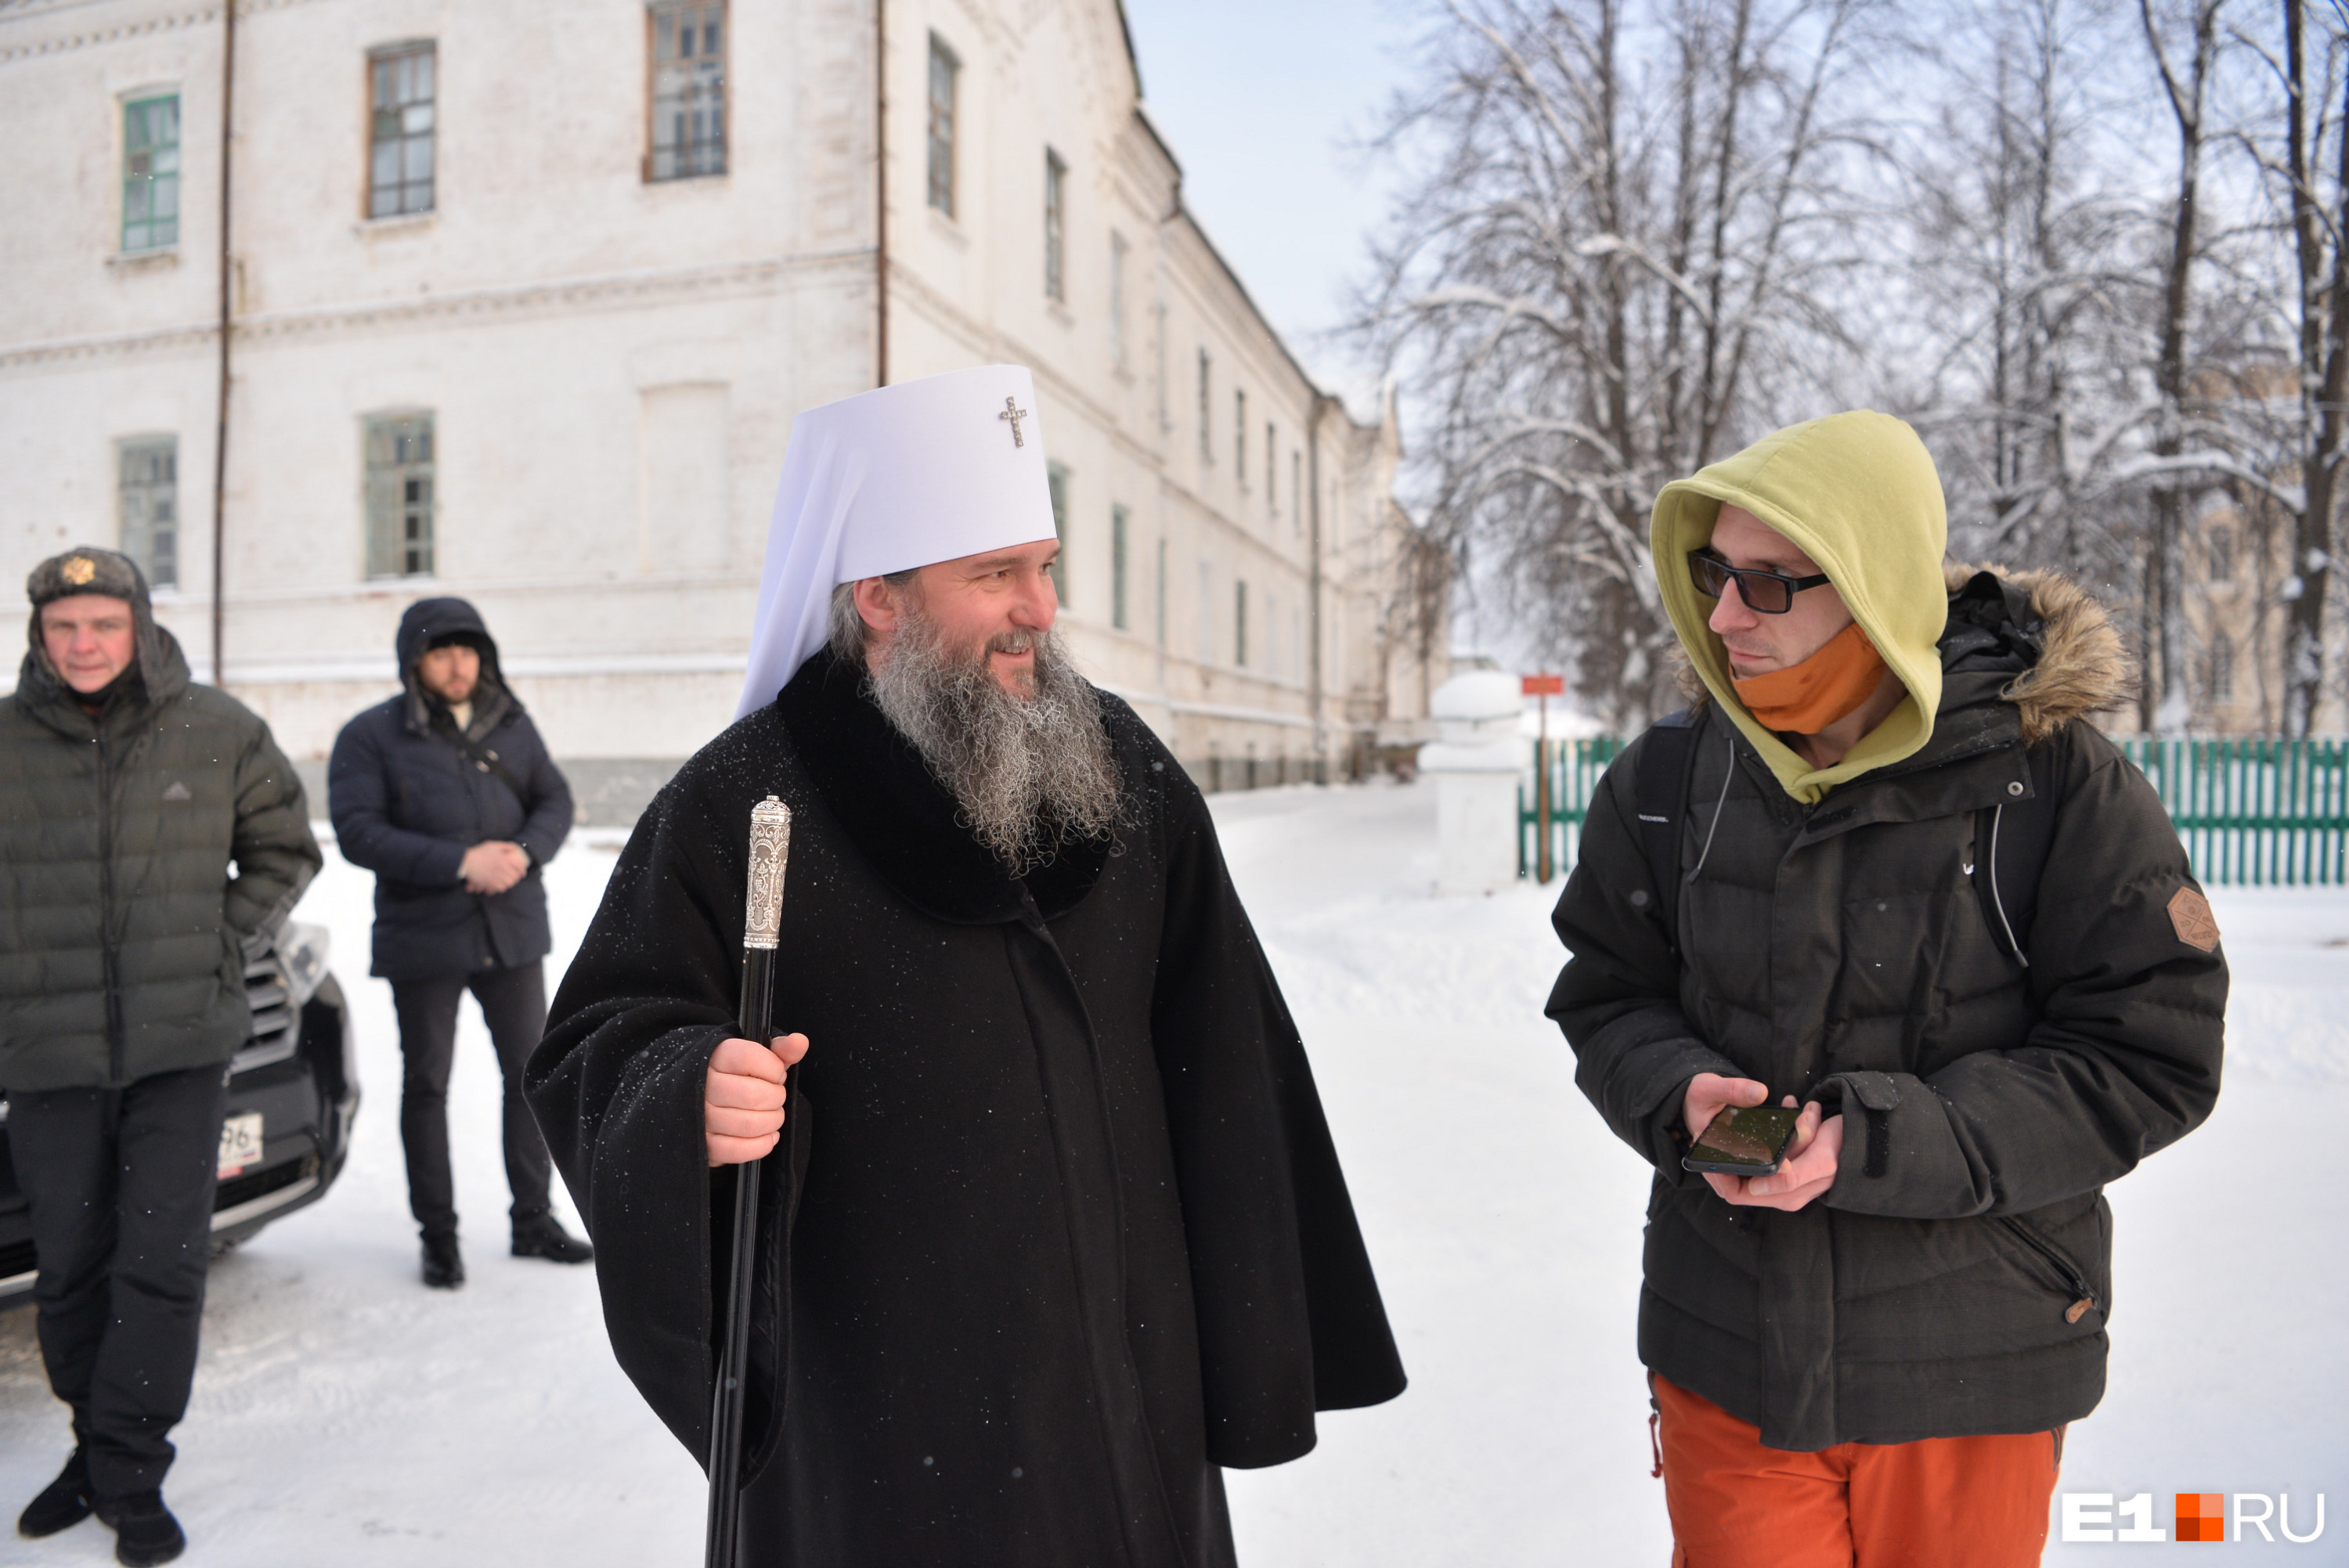 Екатеринбургская епархия готова к переговорам с людьми из Среднеуральского монастыря